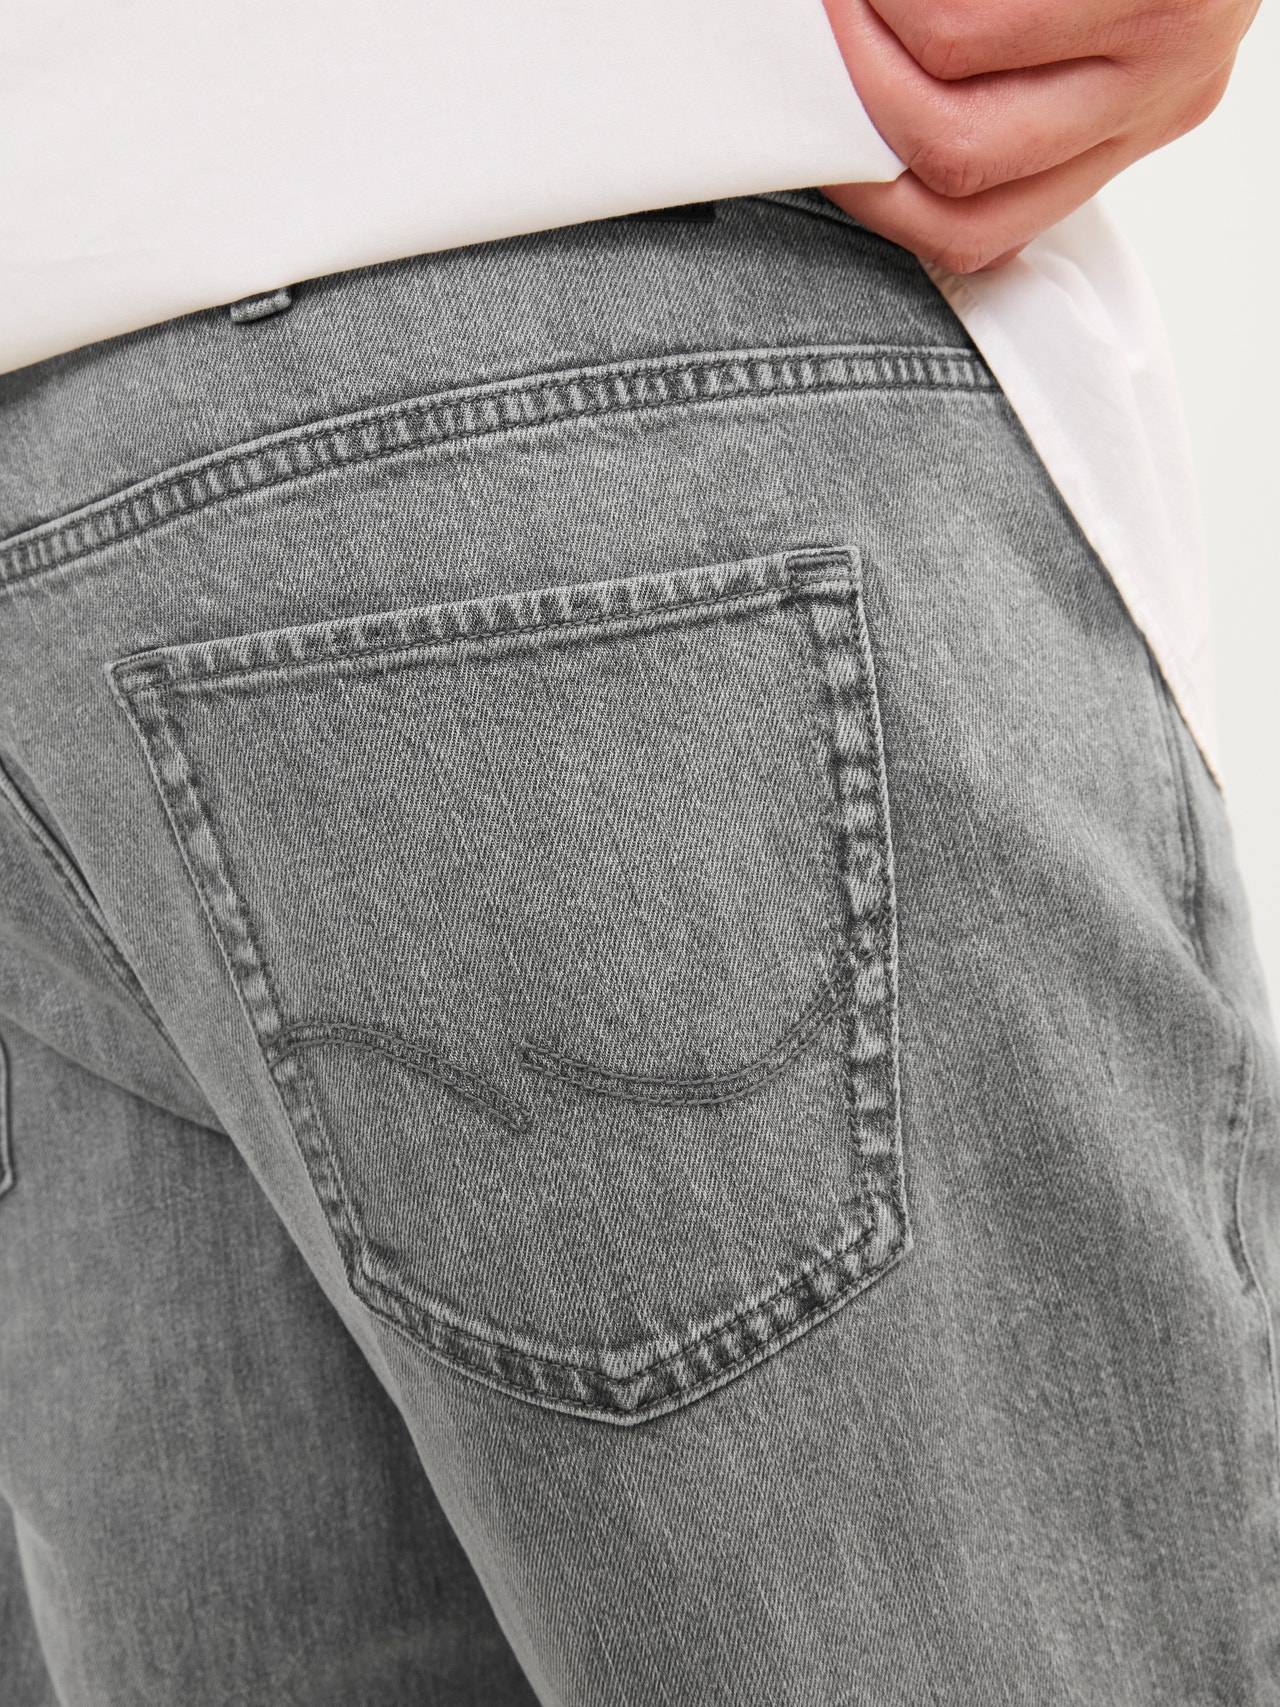 Jack & Jones Plus Size JJIMIKE JJORIGINAL SBD 514 PLS Tapered fit jeans -Grey Denim - 12265718